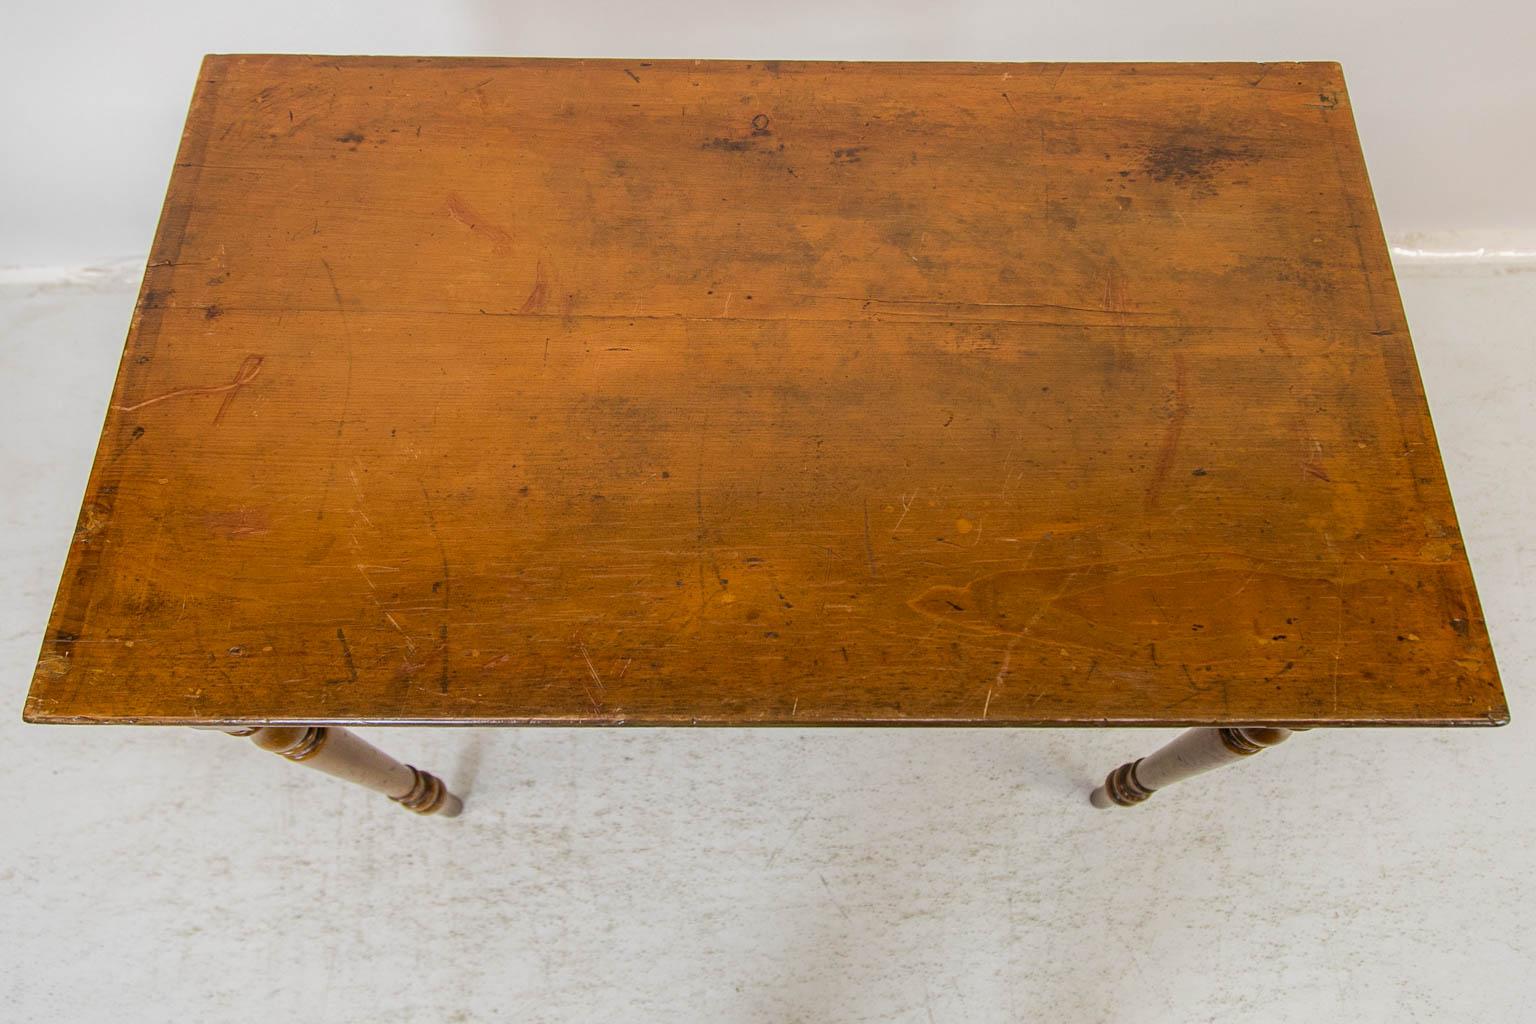 La base de cette table d'appoint est peinte pour simuler le bois et l'incrustation de lignes rouges. Le dessus présente quelques taches correspondant à l'usage et à l'âge. Les bords arrière et latéraux du plateau présentent une marque fantôme d'une